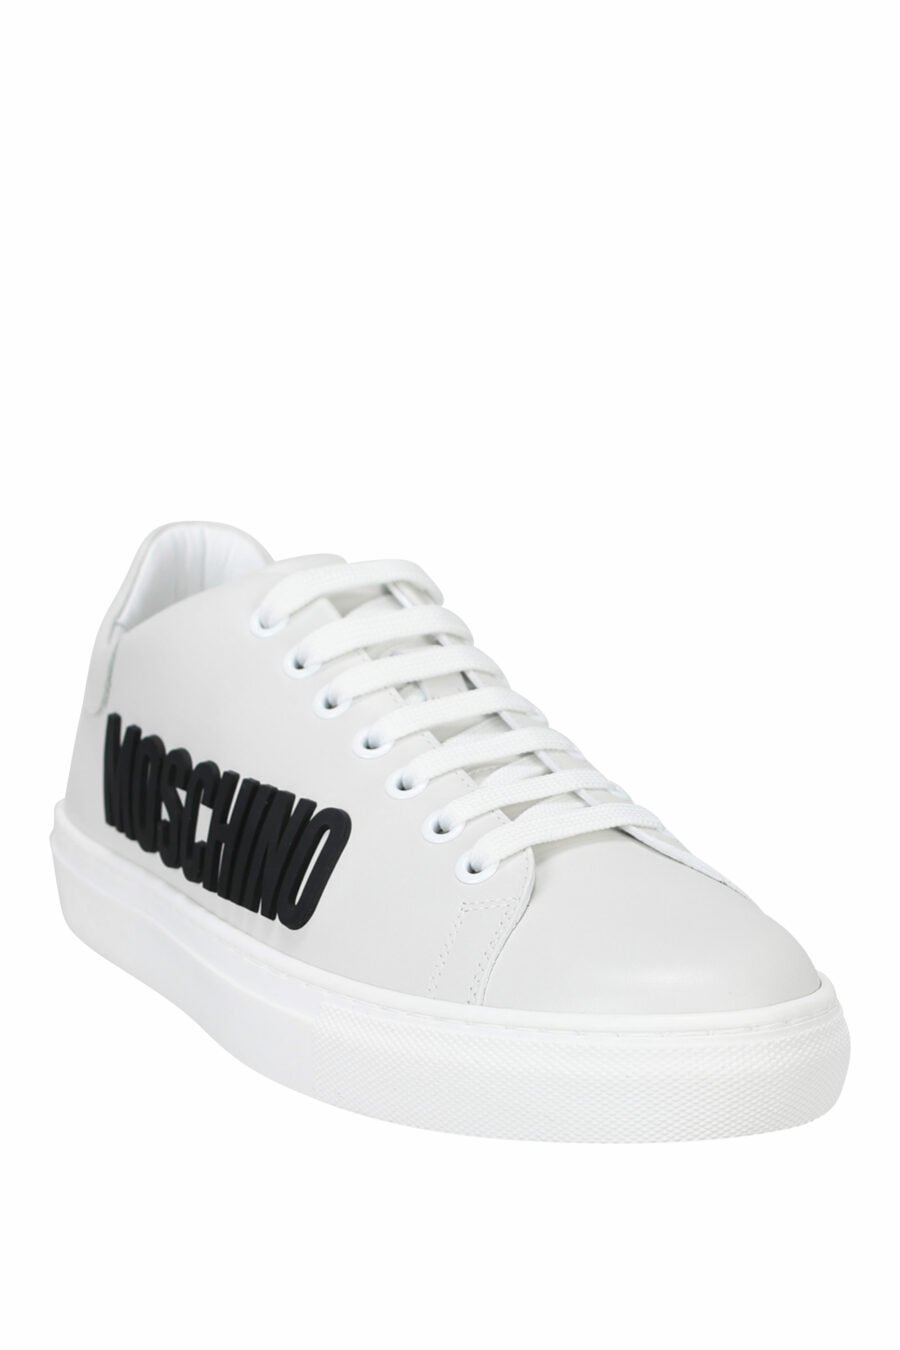 Zapatillas blancas con logo negro "lettering" - 8054653099241 1